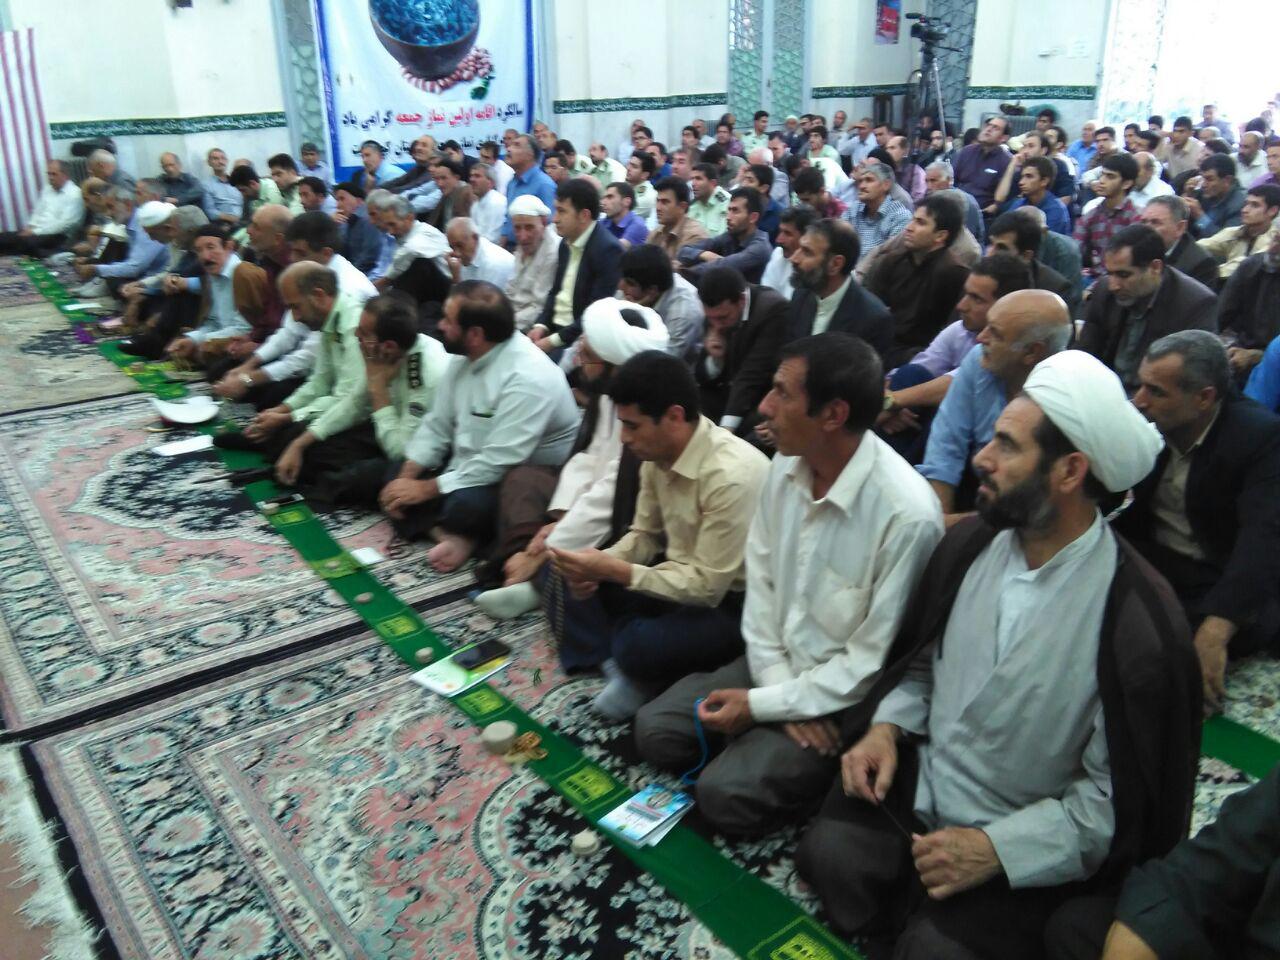 نماز جمعه جایی برای آگاهی امت اسلامی از اوضاع کشور و جهان است